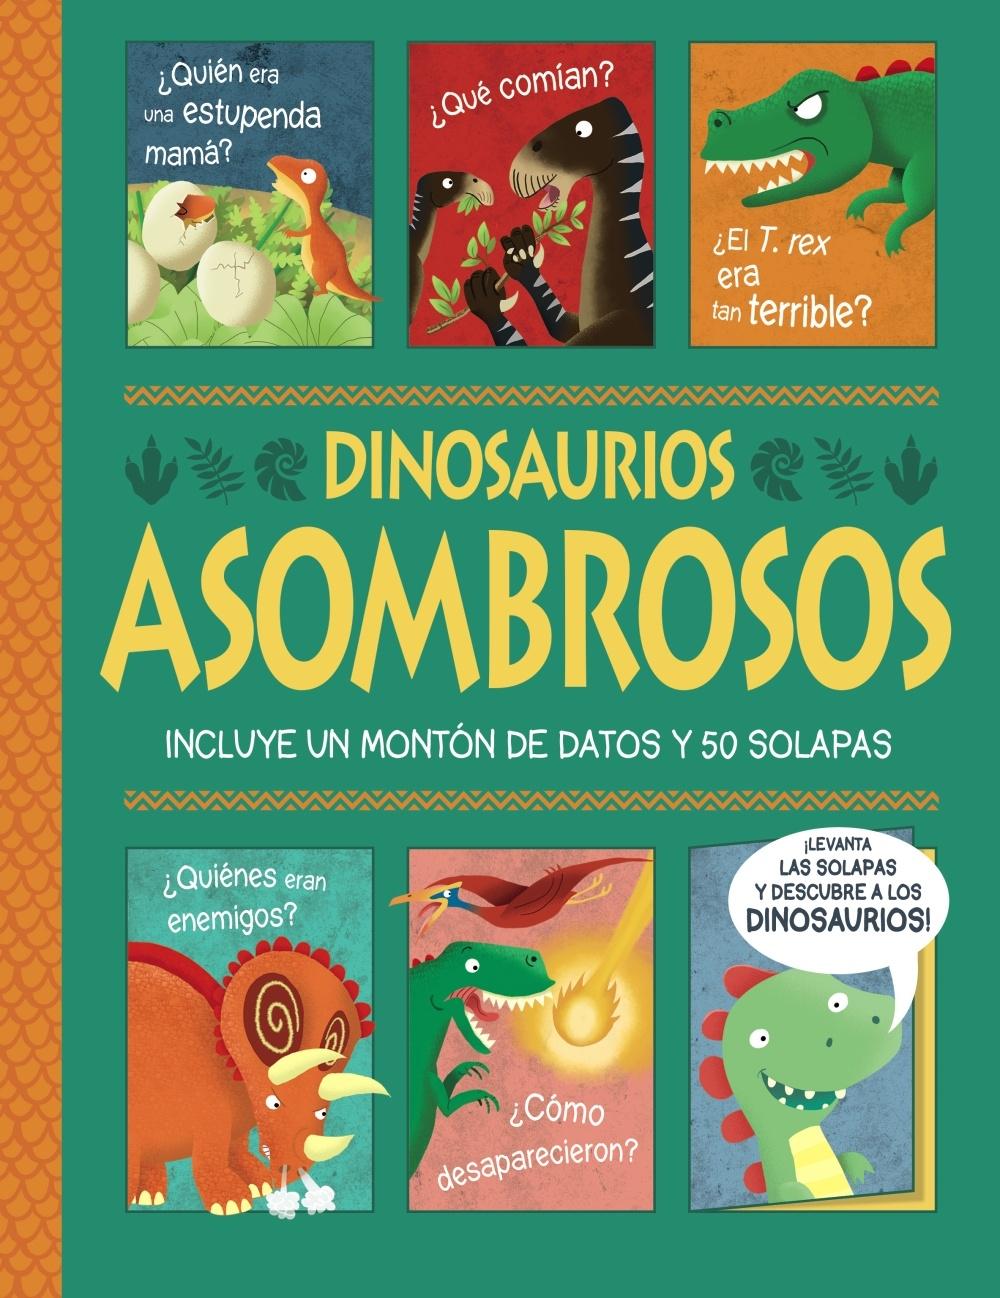 Dinosaurios asombrosos. ¡Un libro con solapas!